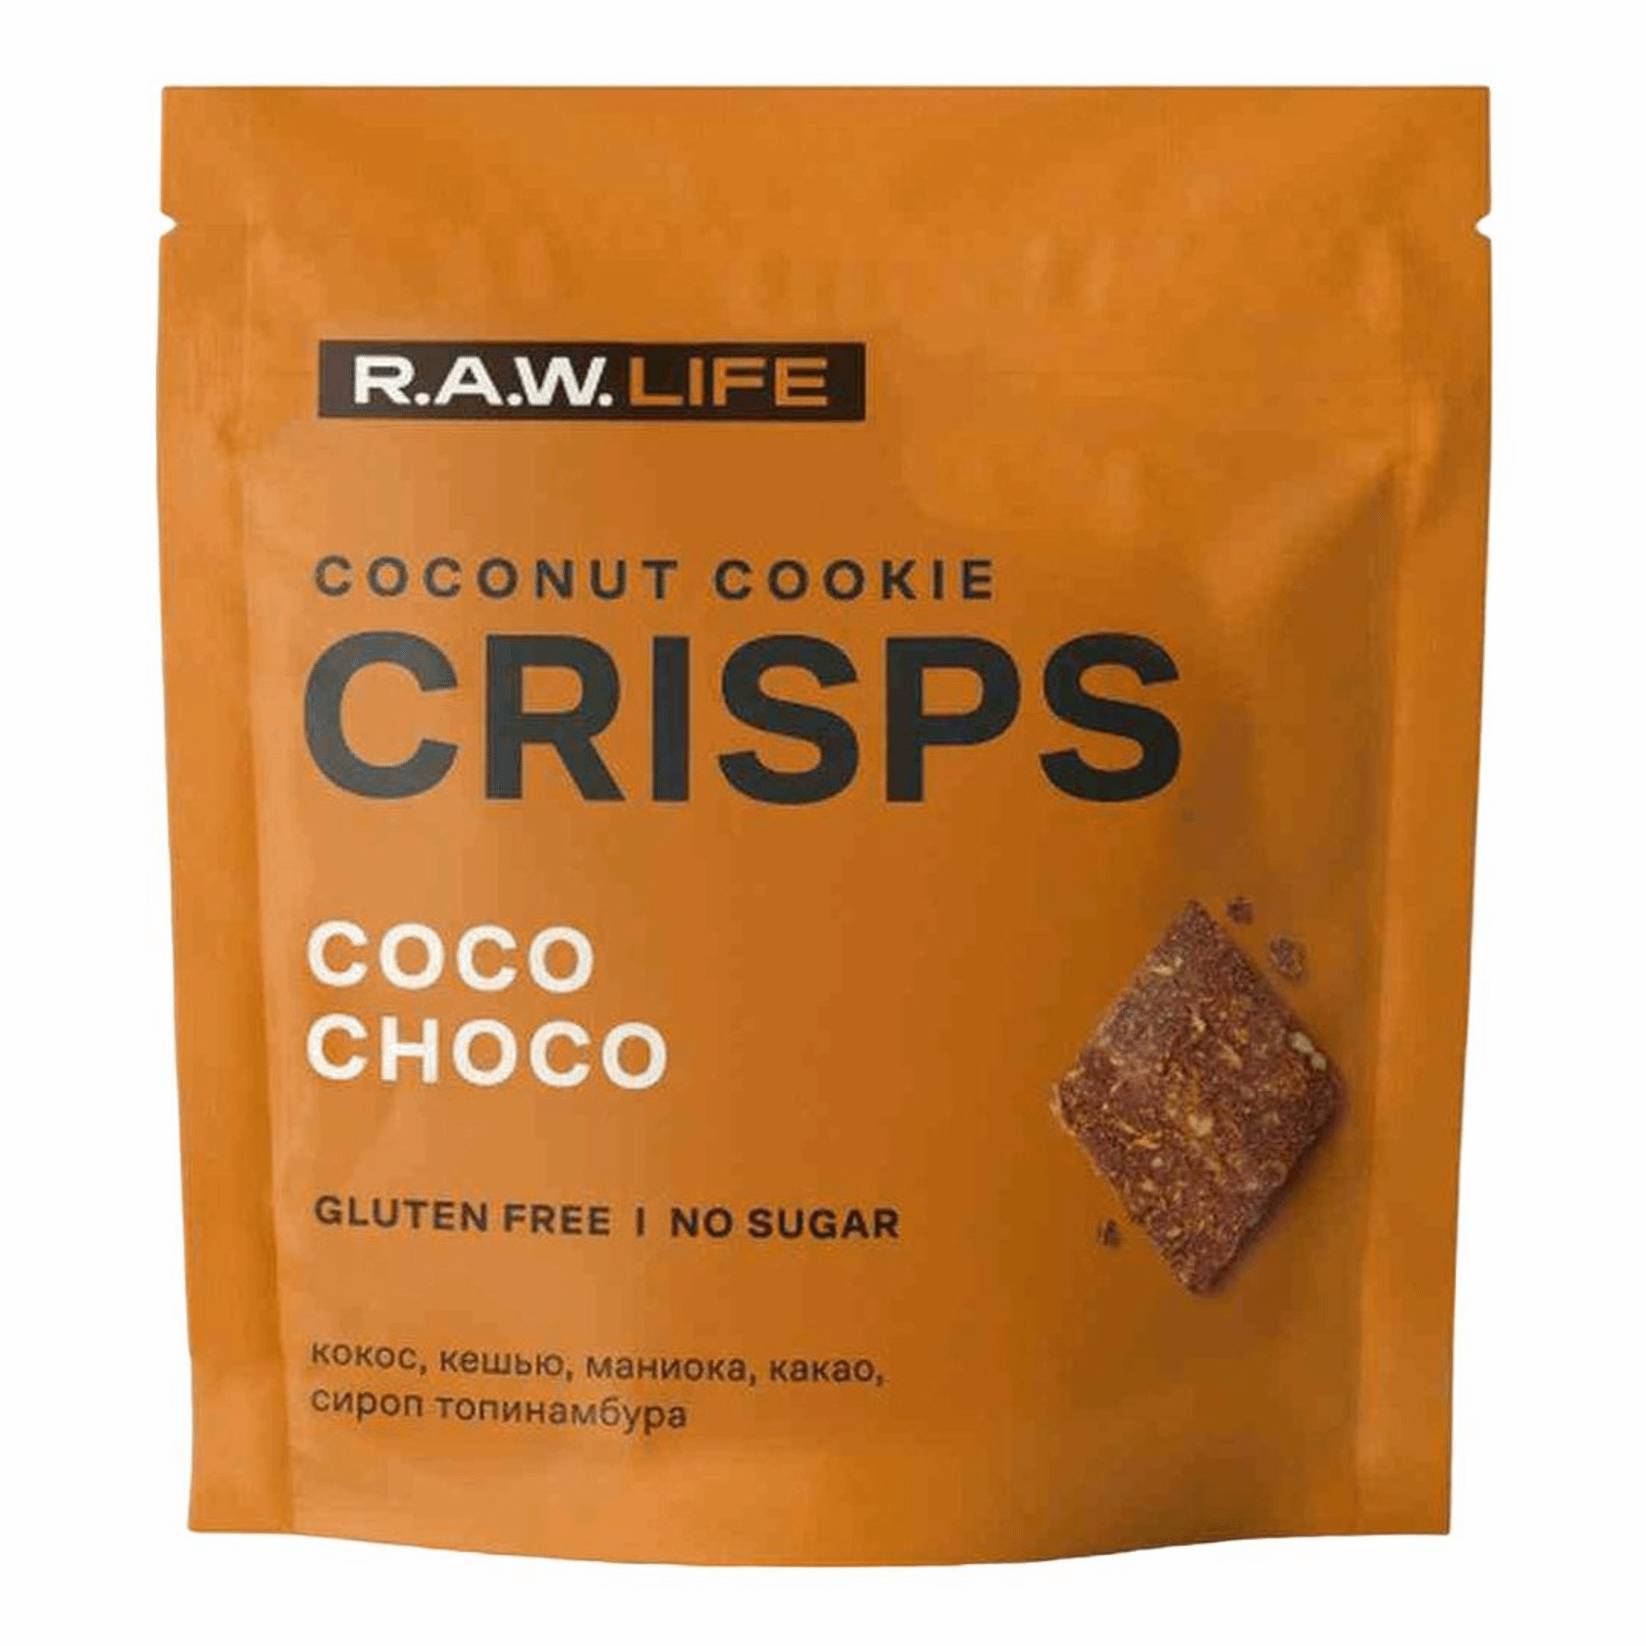 Печенье R.A.W. LIFE Crisps кокос-шоколад, 35 г паста кешью кокосовая nattys whitey с мёдом 525 гр